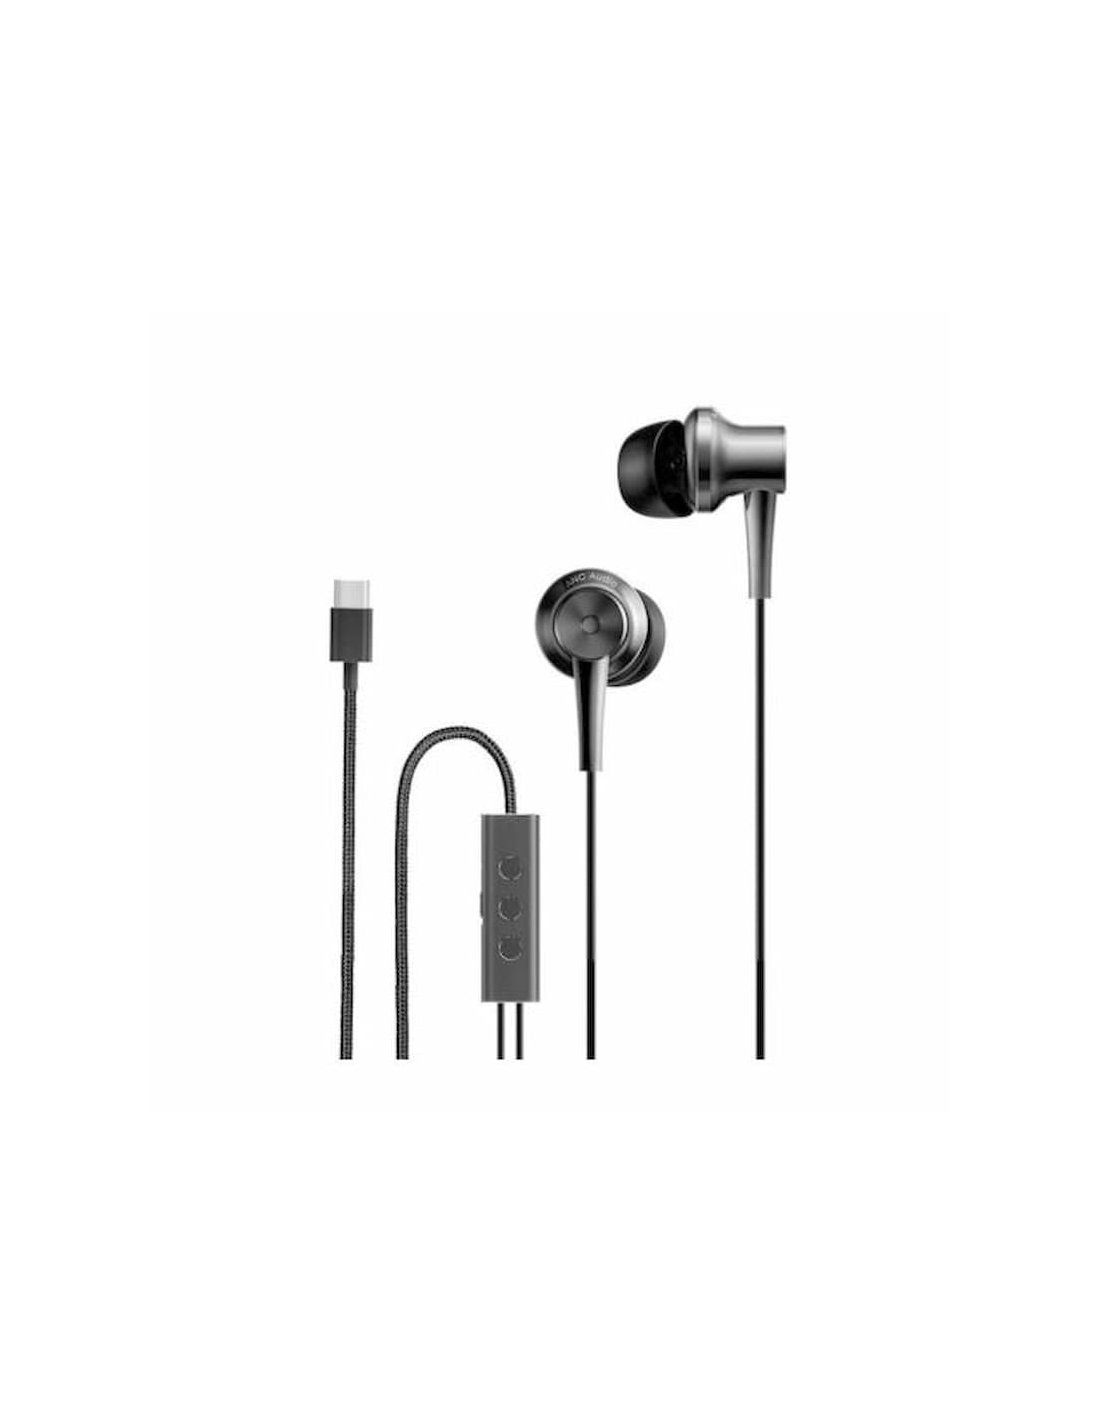 Comprar Auriculares ocn micrófono Xiaomi Mi Noise Canceling con